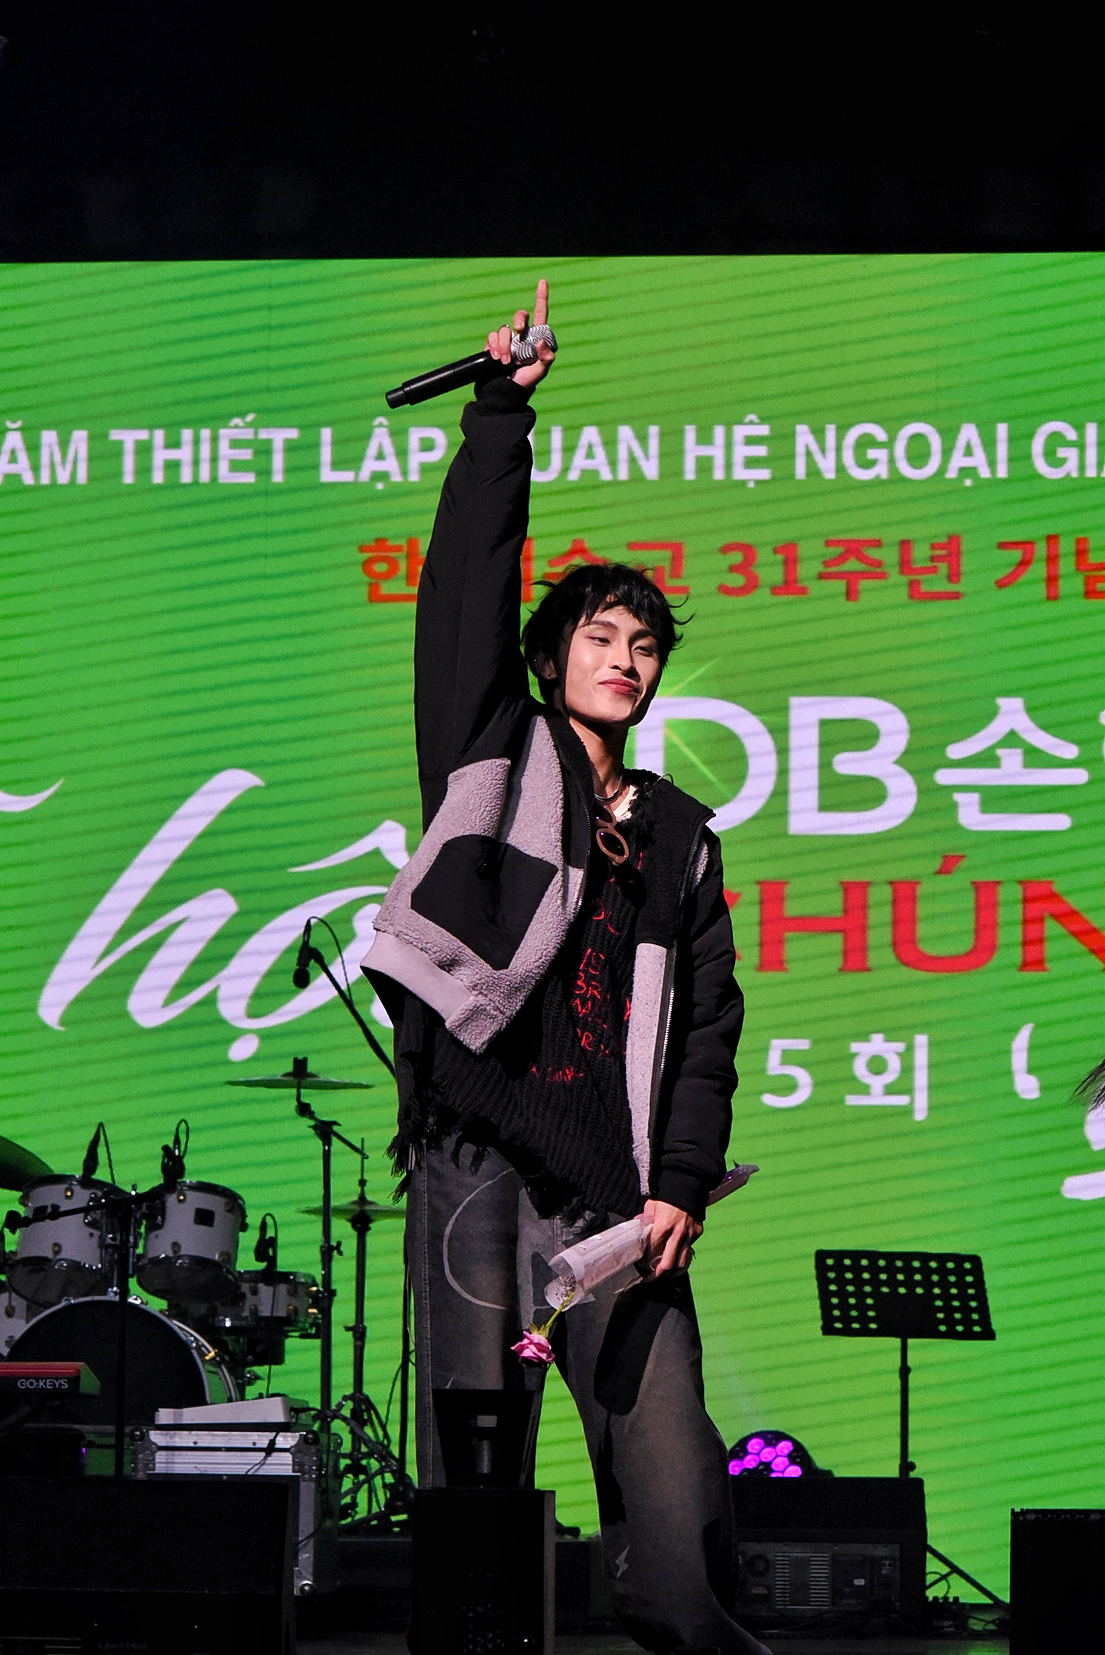 Chủ nhân hit 'Thích em hơi nhiều' khuấy động sân khấu tại Hàn Quốc  - Ảnh 3.